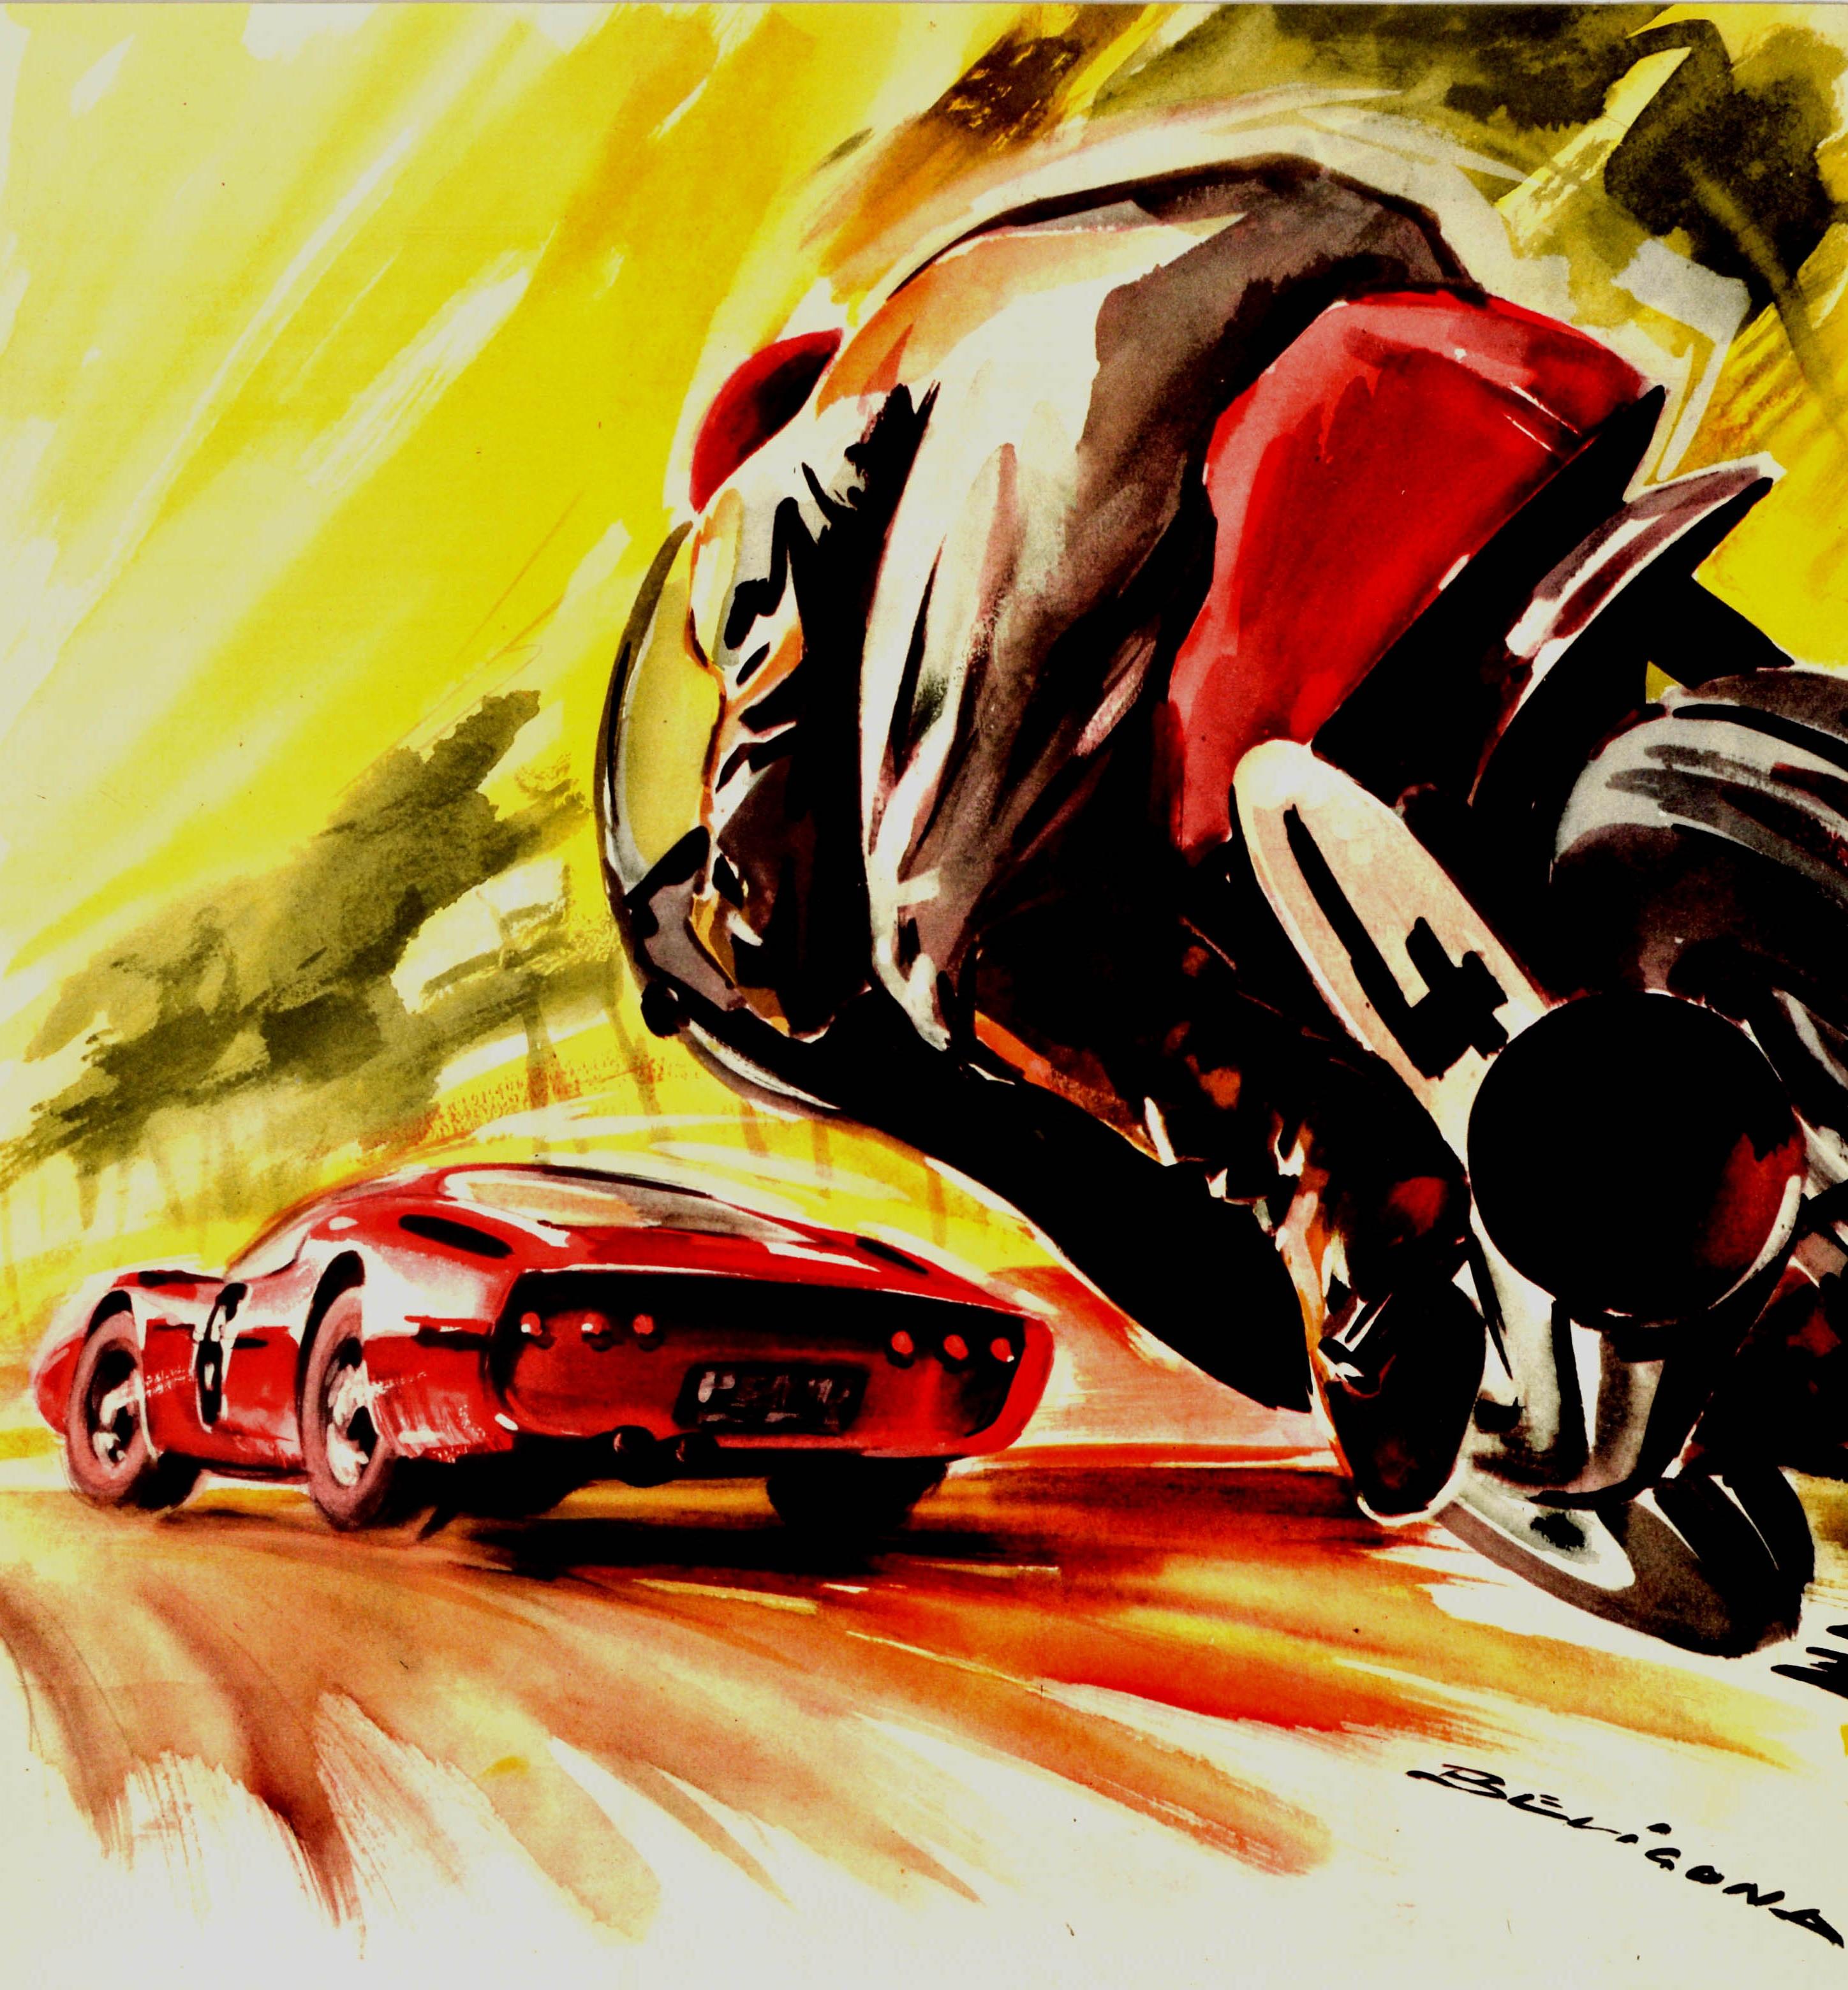 Original vintage motor sport poster for the 4eme Criterium International de Vitesse Motocycliste et Essais des Voitures des 24 Heures du Mans sur les circuit des 24 heures les 18 et 19 Avril 1964 / 4th international motorcycle speed event and the 24